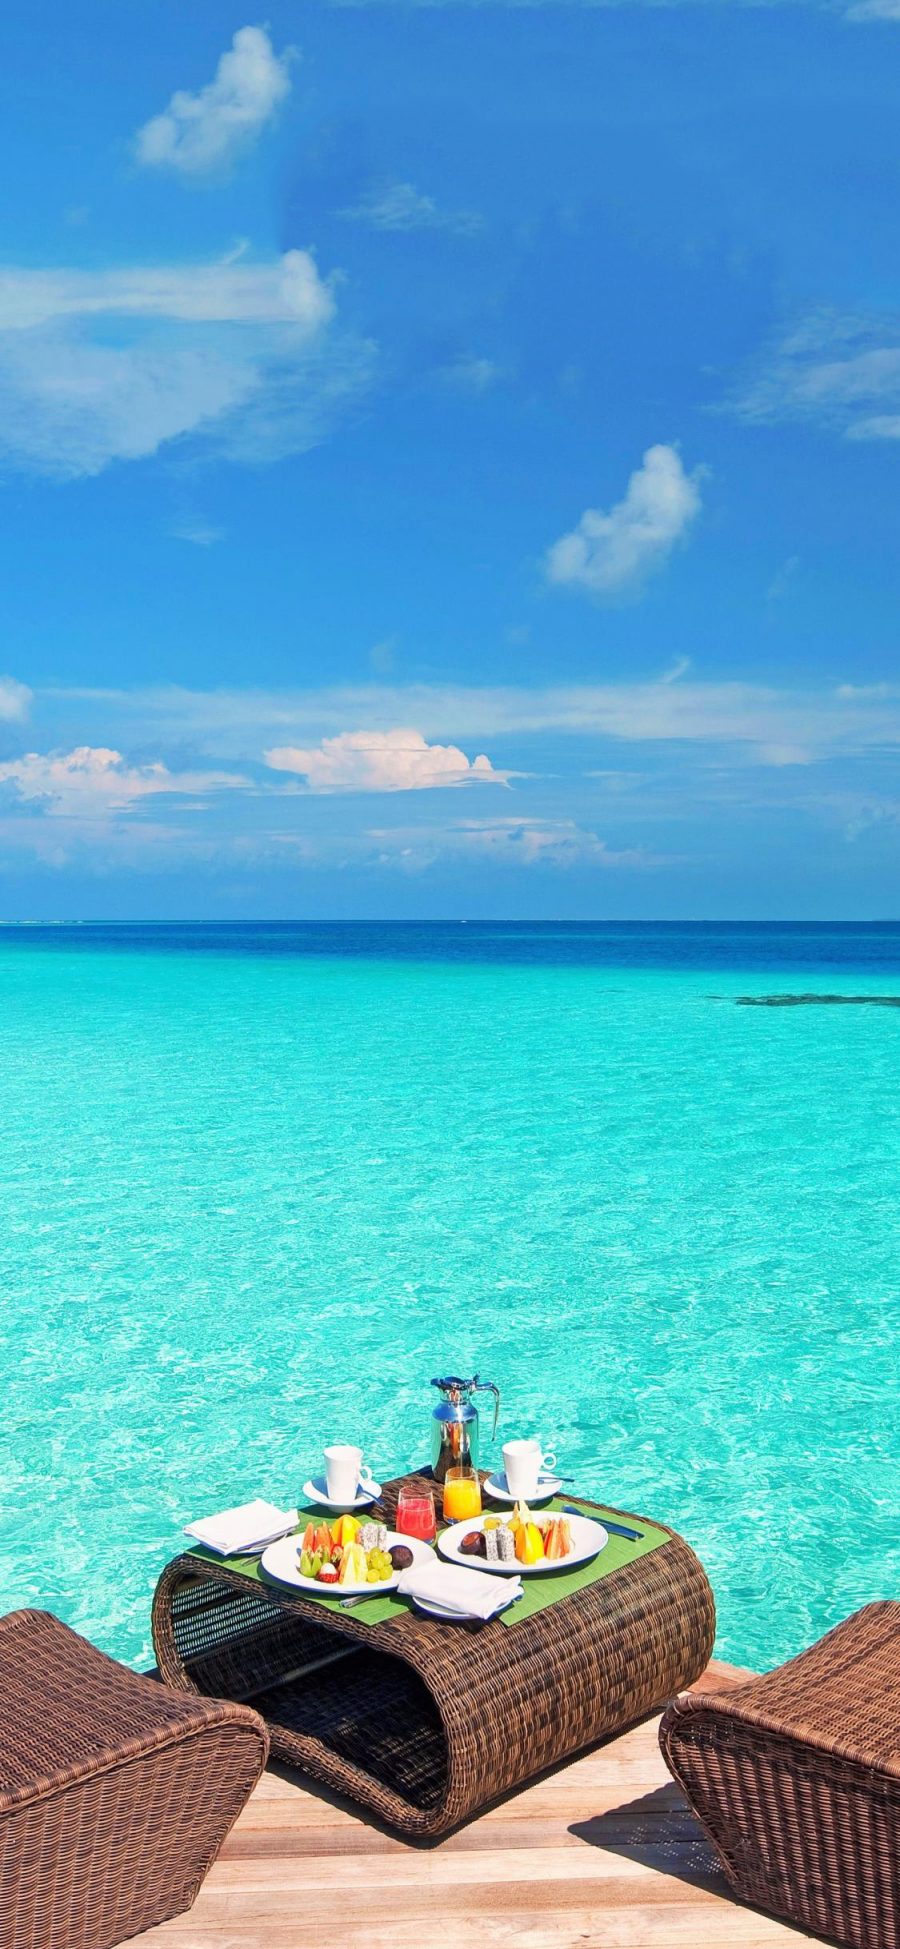 [2436×1125]海景 大海 湛蓝 美食 休闲度假 苹果手机壁纸图片